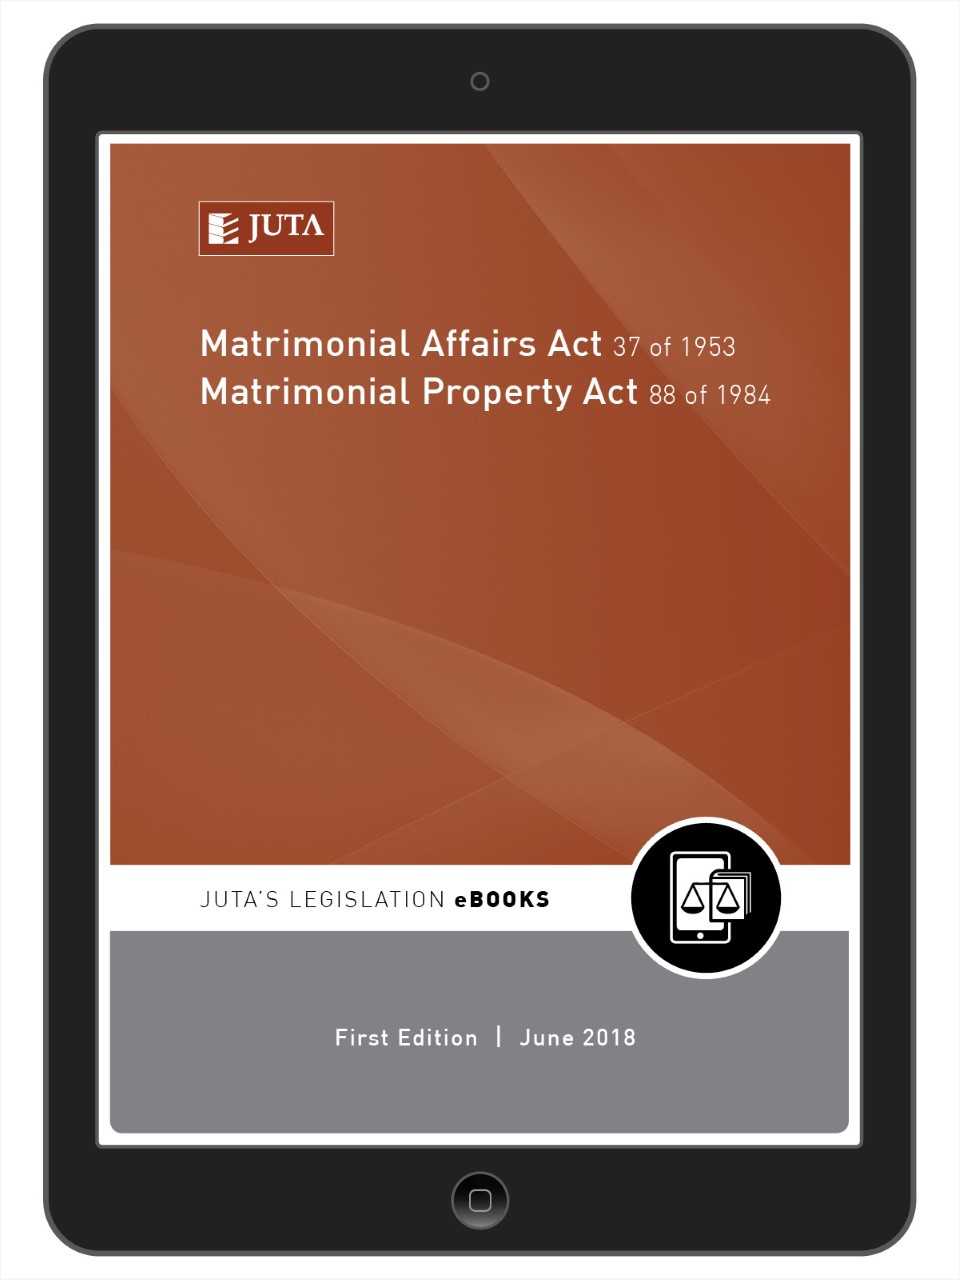 Matrimonial Affairs Act 37 of 1953 and Matrimonial Property Act 88 of 1984